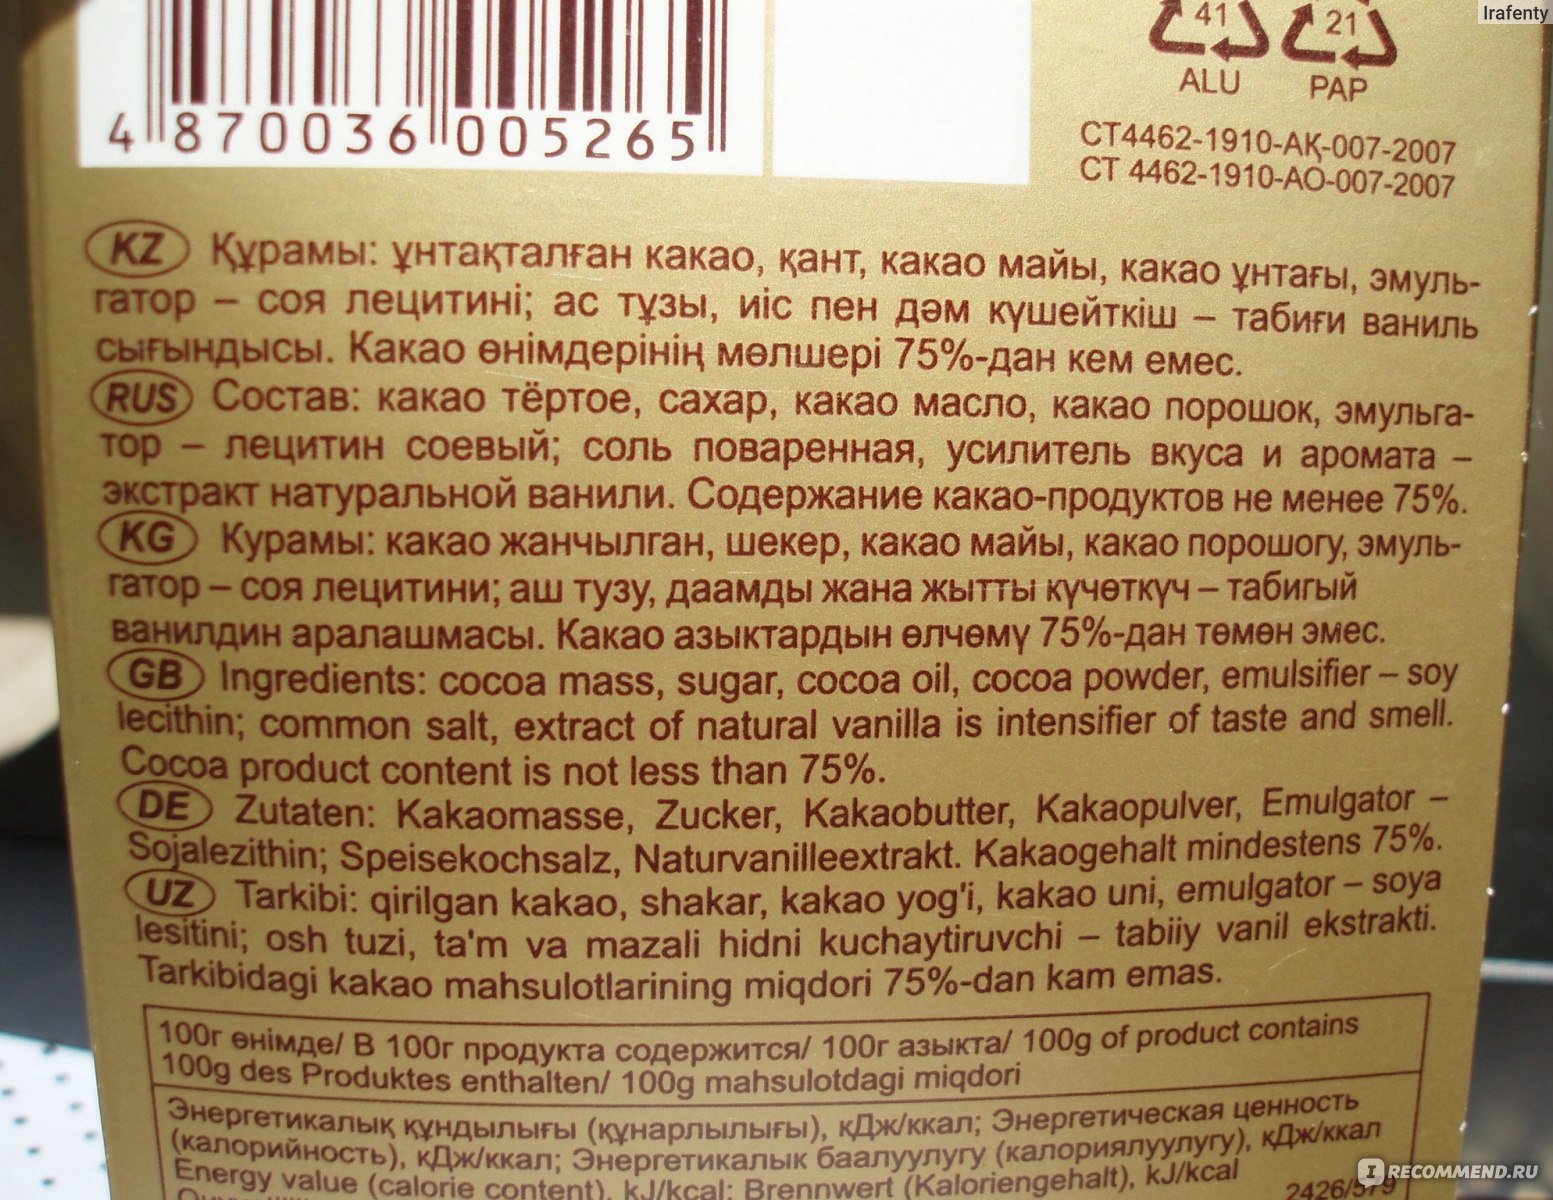 Казахстанский шоколад состав